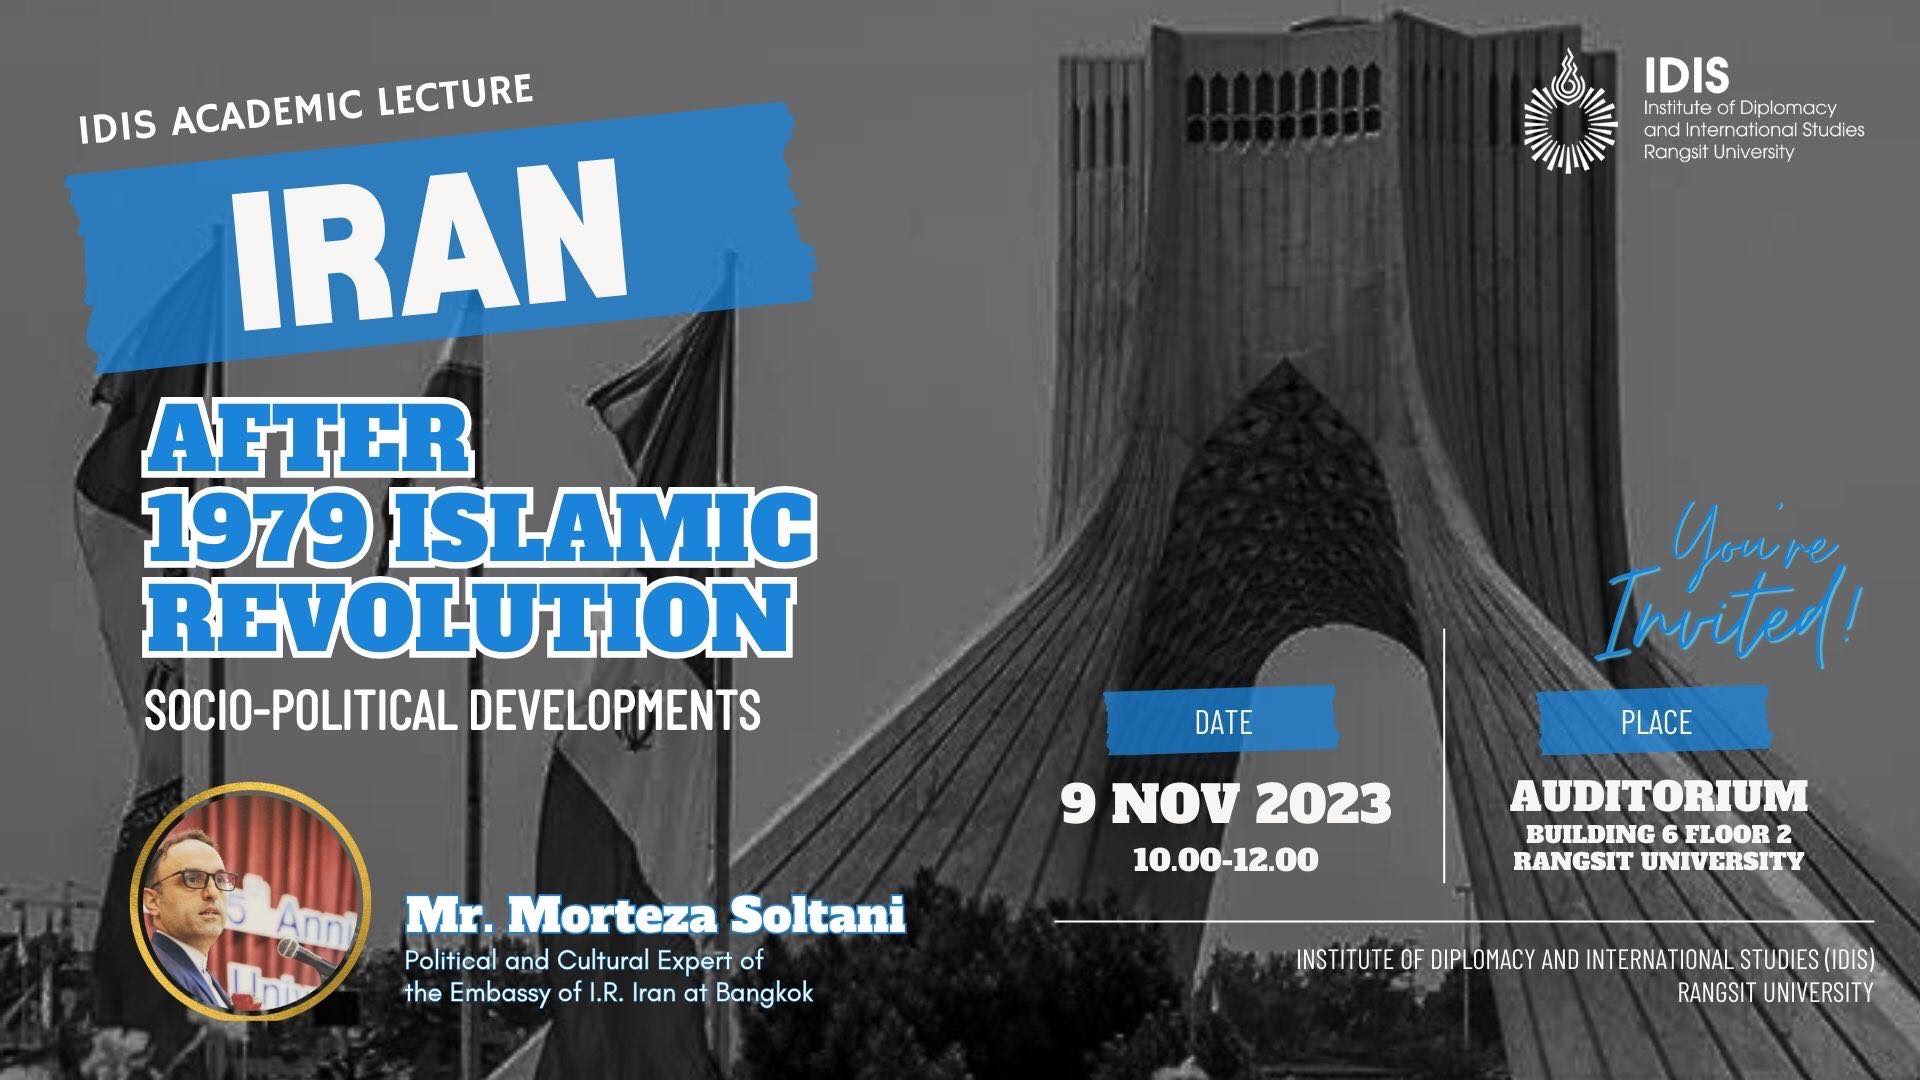 ม.รังสิต จัดงานการบรรยายทางวิชาการ IRAN : หลังจากการปฏิวัติอิสลาม 1979 การพัฒนาสังคม-การเมือง